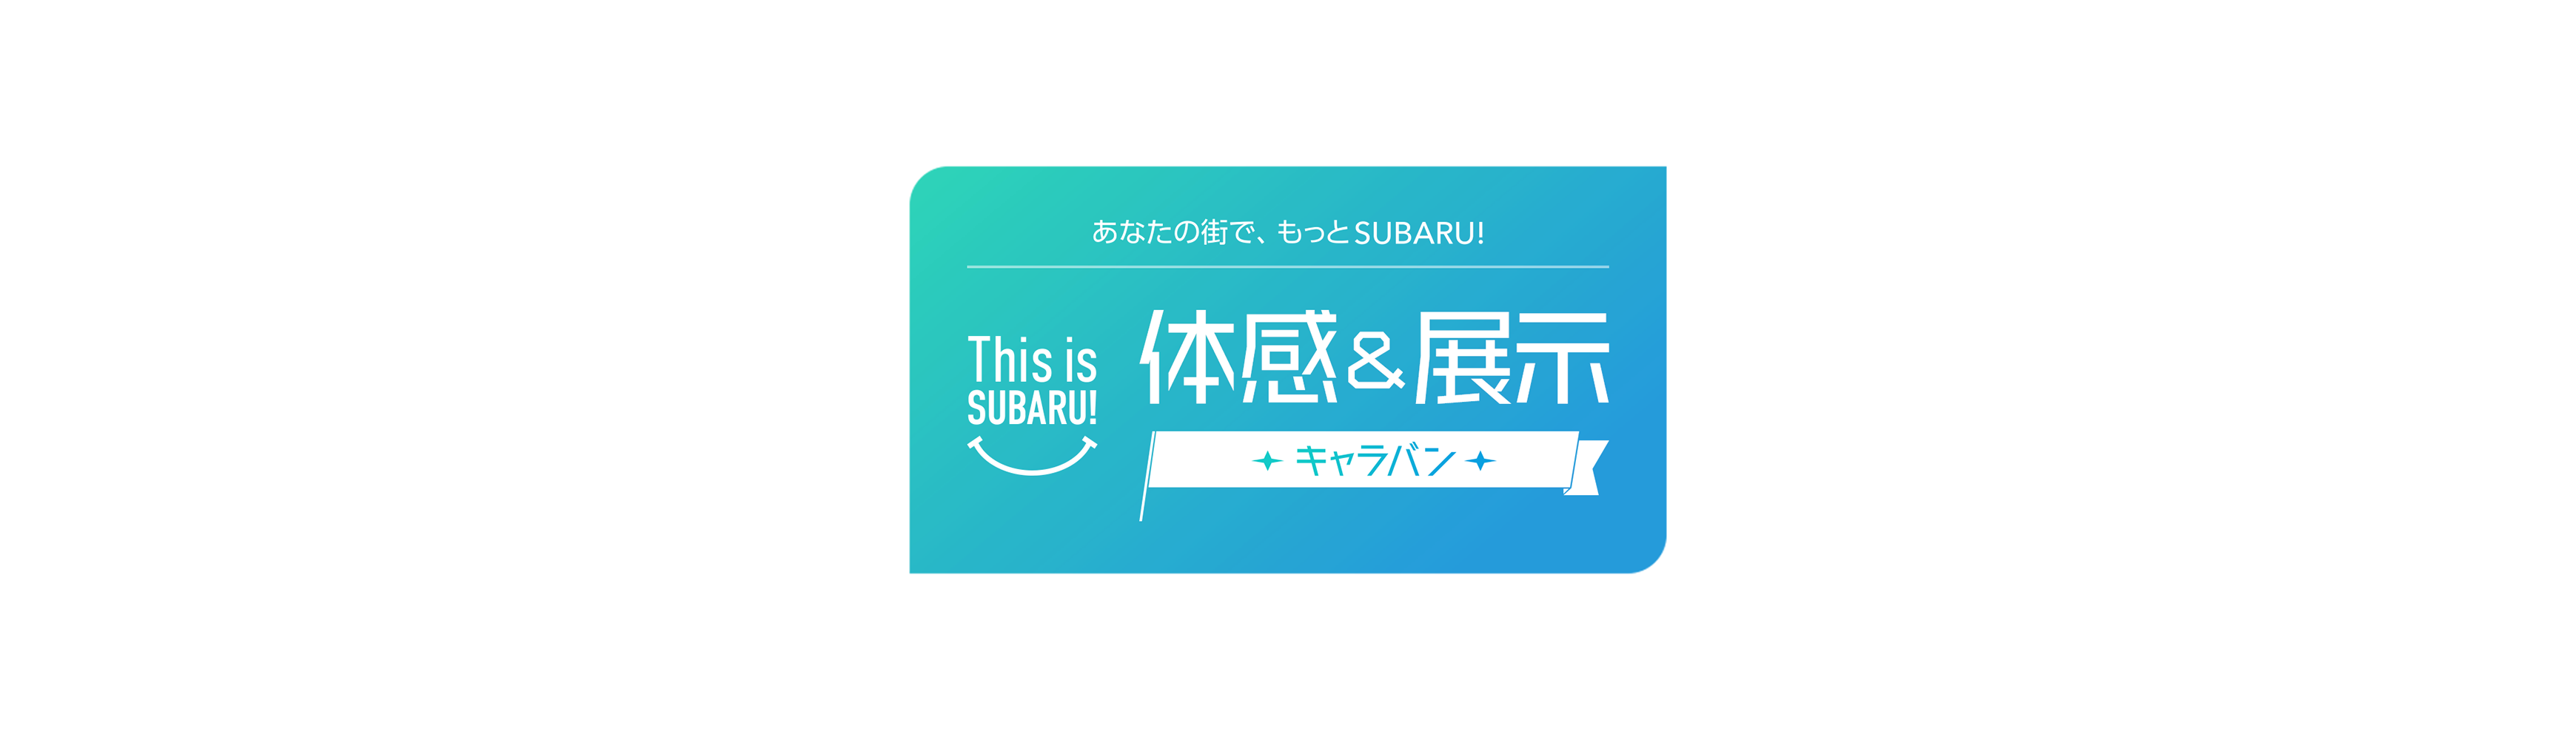 あなたの街で、もっとSUBARU!体感&展示キャラバン